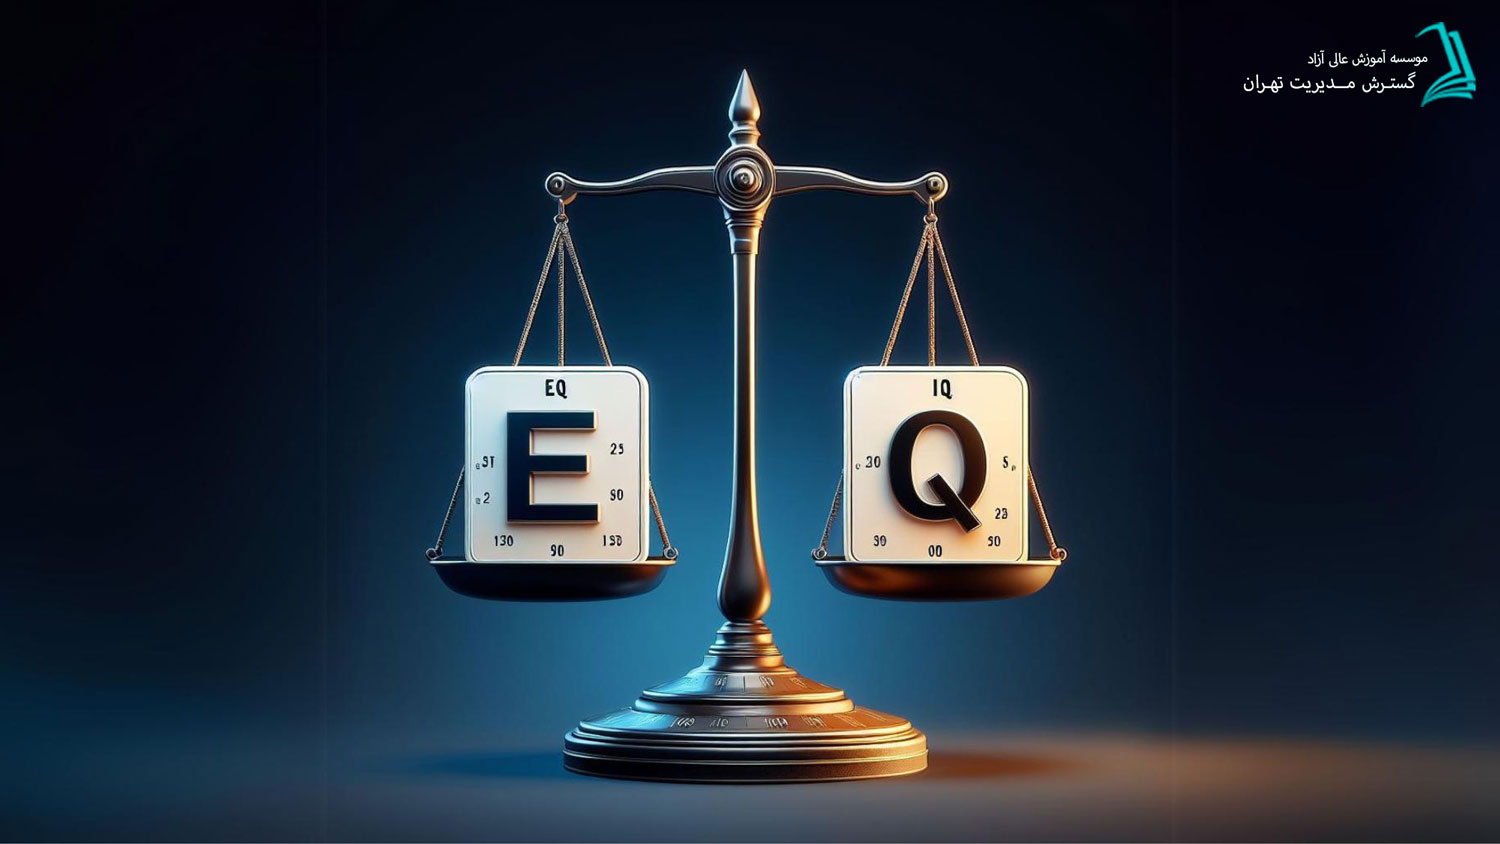 هوش هیجانی EQ در مقابل هوش شناختی IQ